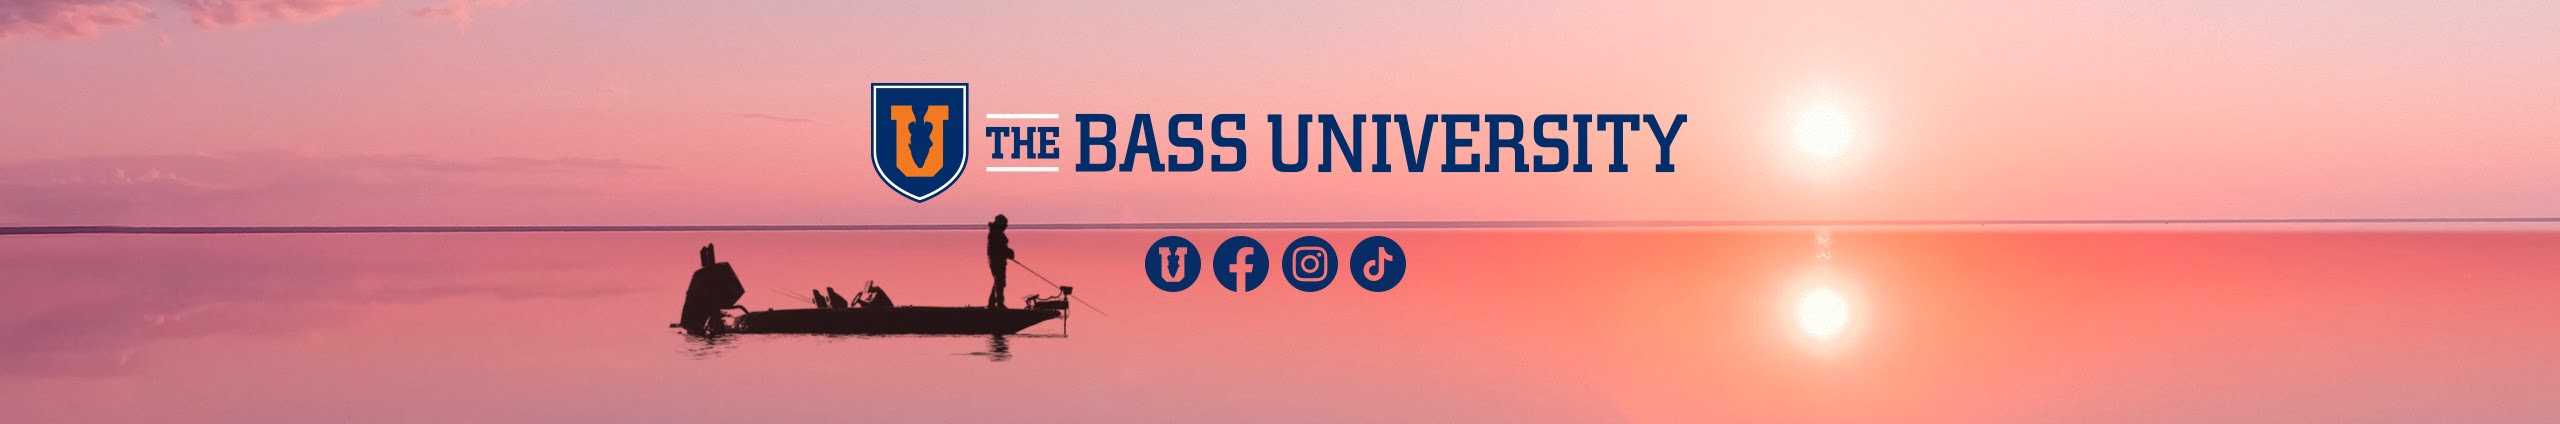 Bass University 